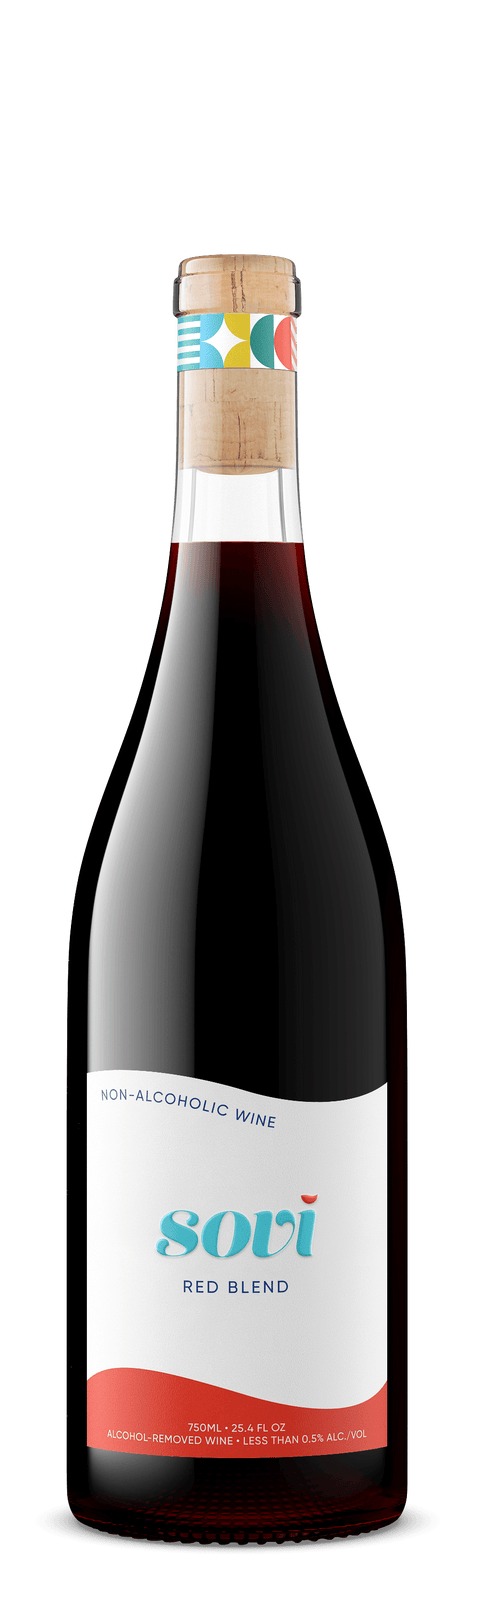 3 Bottle Red Wine Bundle - bardelia